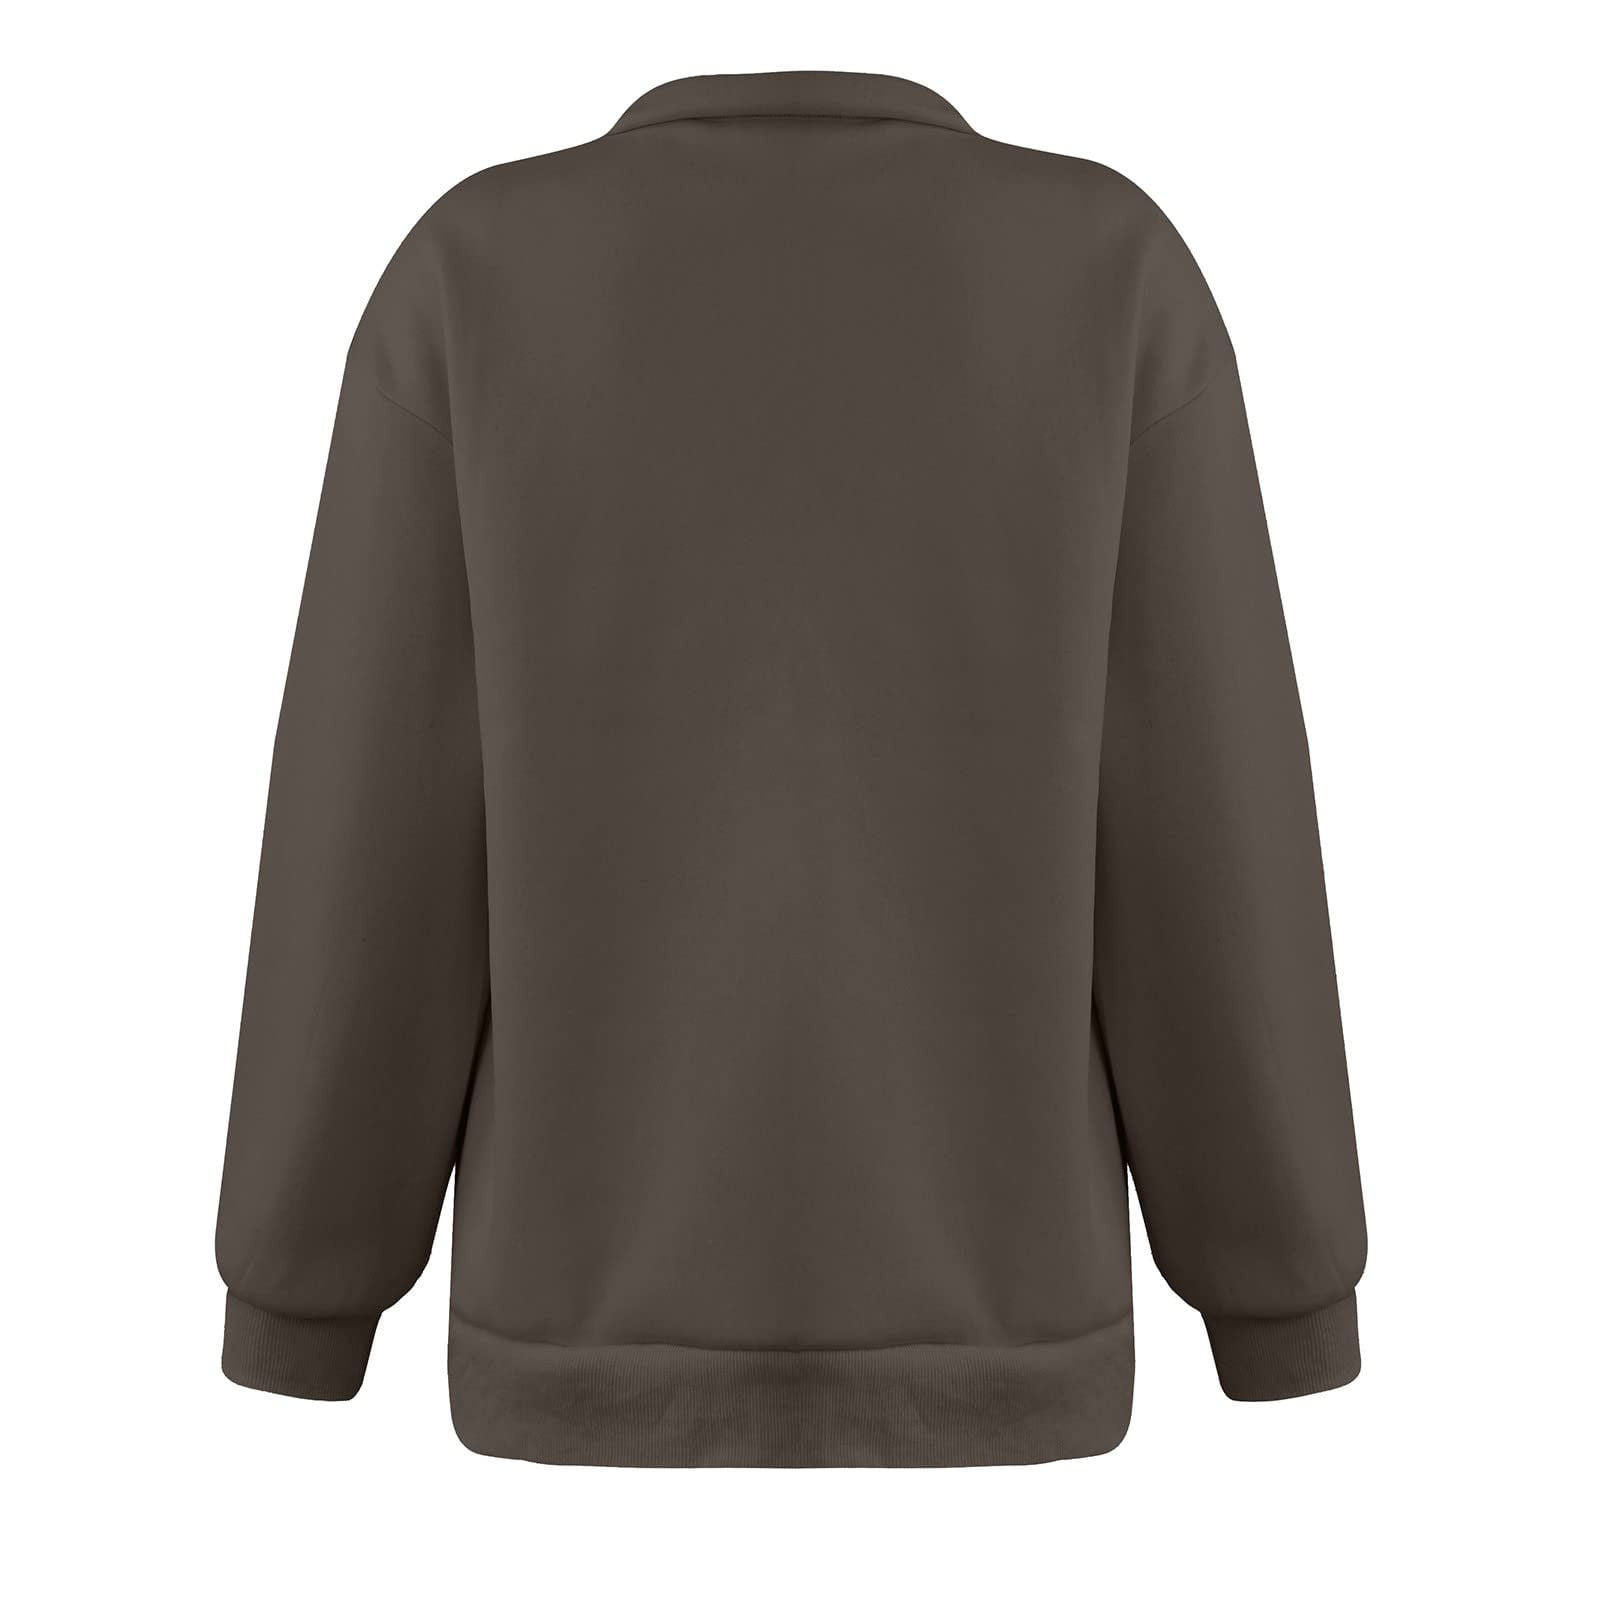 Yyeselk Women Half Zip Oversized Sweatshirts Graphic Printed Long Sleeve  Solid Color Drop Shoulder Fleece Workout Pullover Brown S